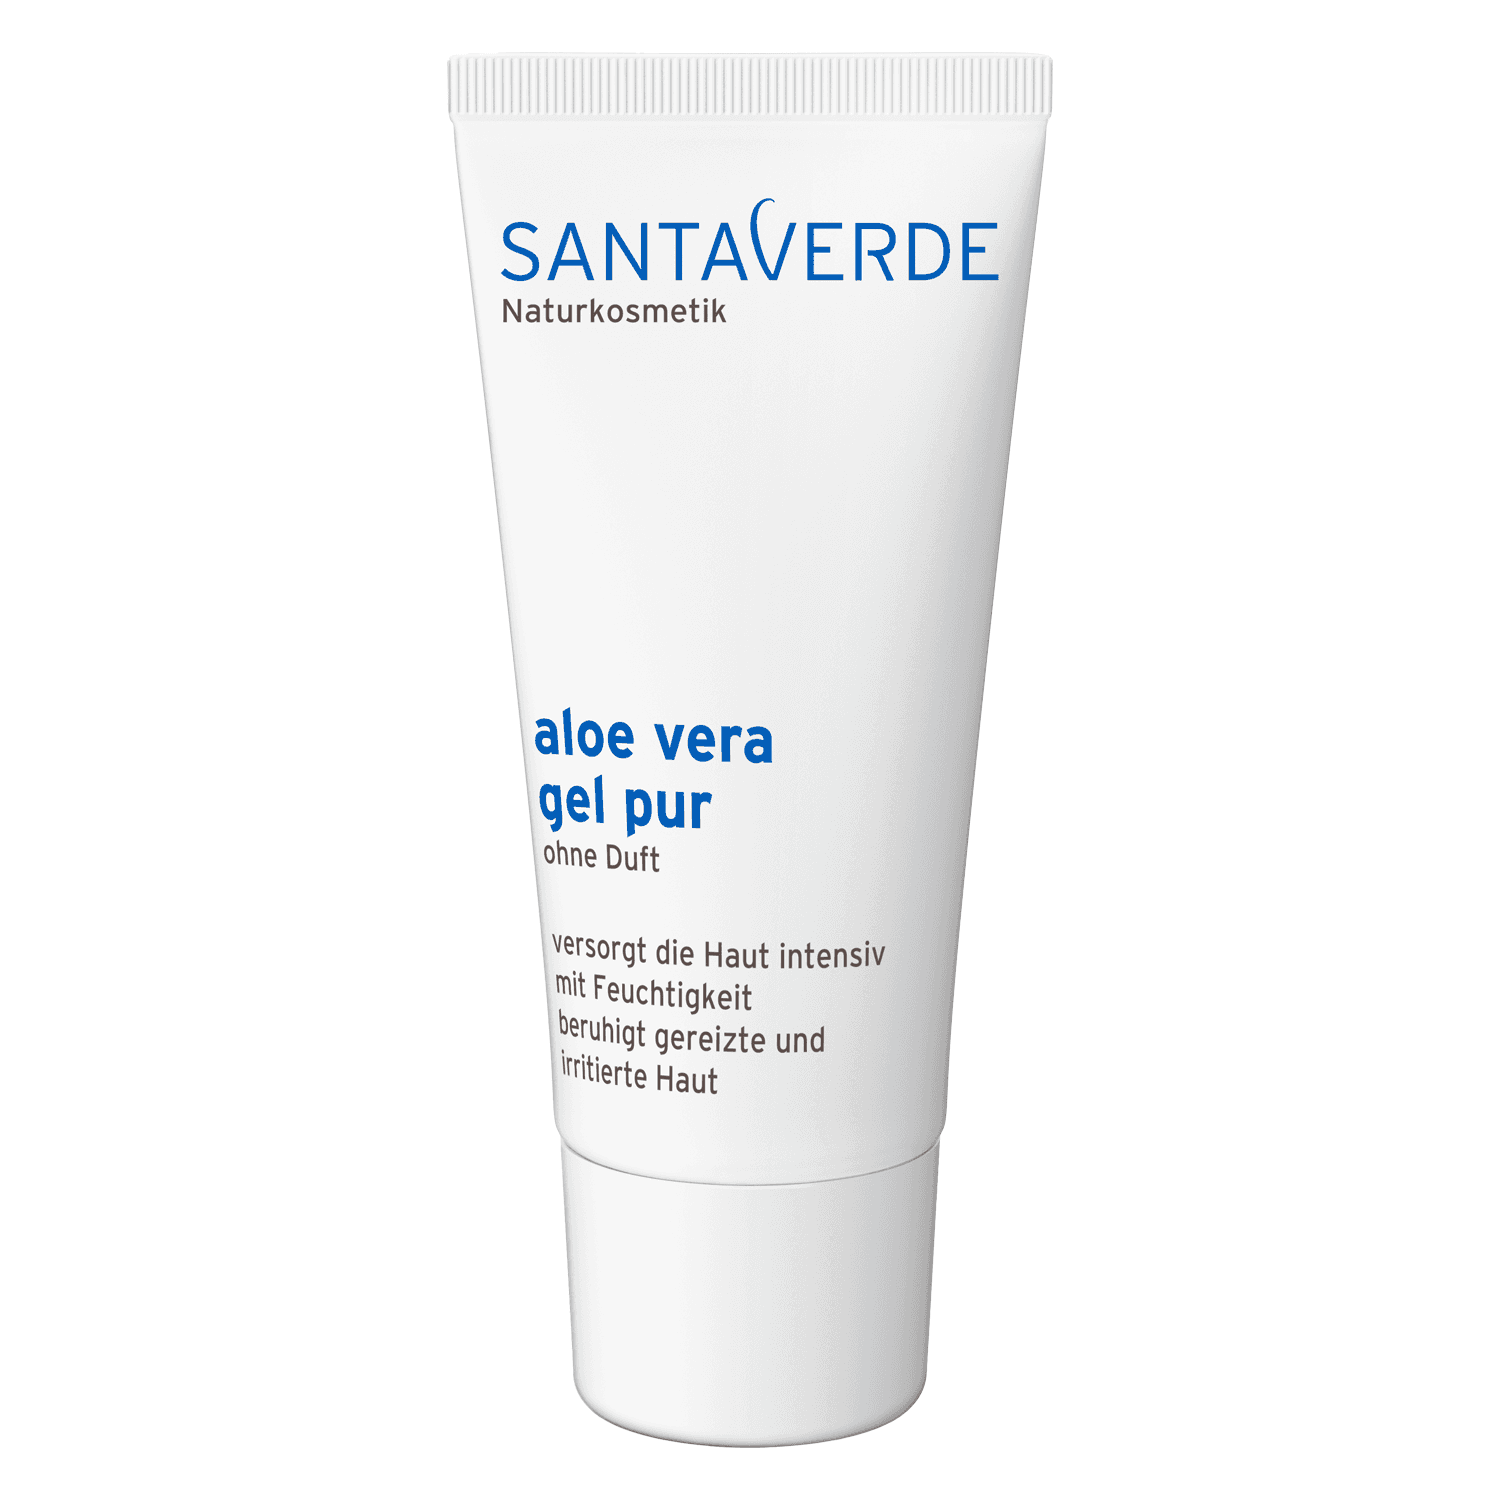 SANTAVERDE - aloe vera gel pur without fragrance